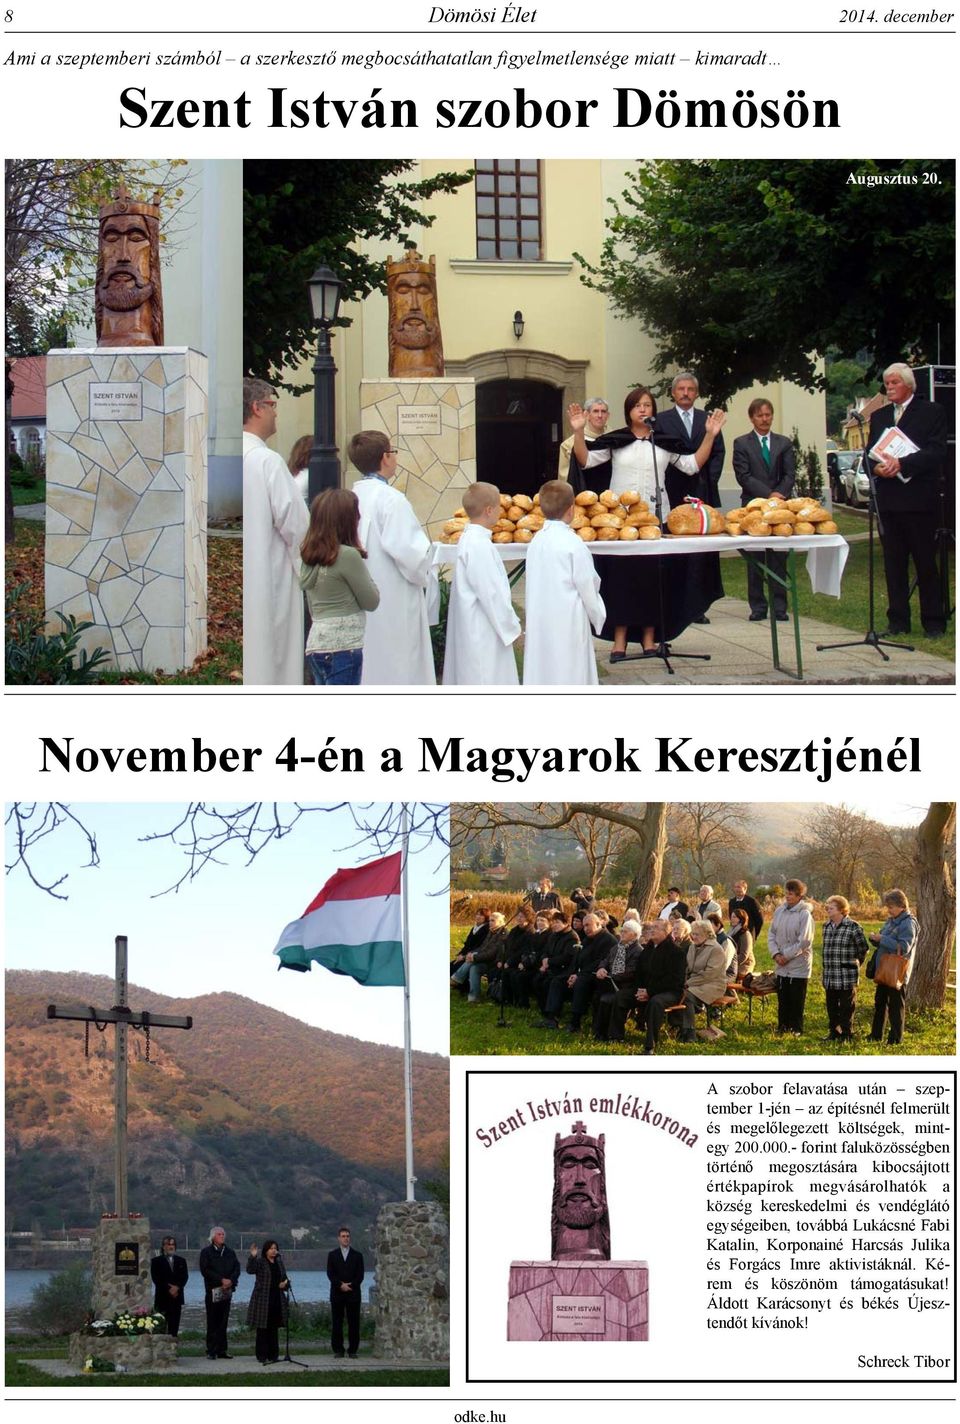 November 4-én a Magyarok Keresztjénél A szobor felavatása után szeptember 1-jén az építésnél felmerült és megelőlegezett költségek, mintegy 200.000.